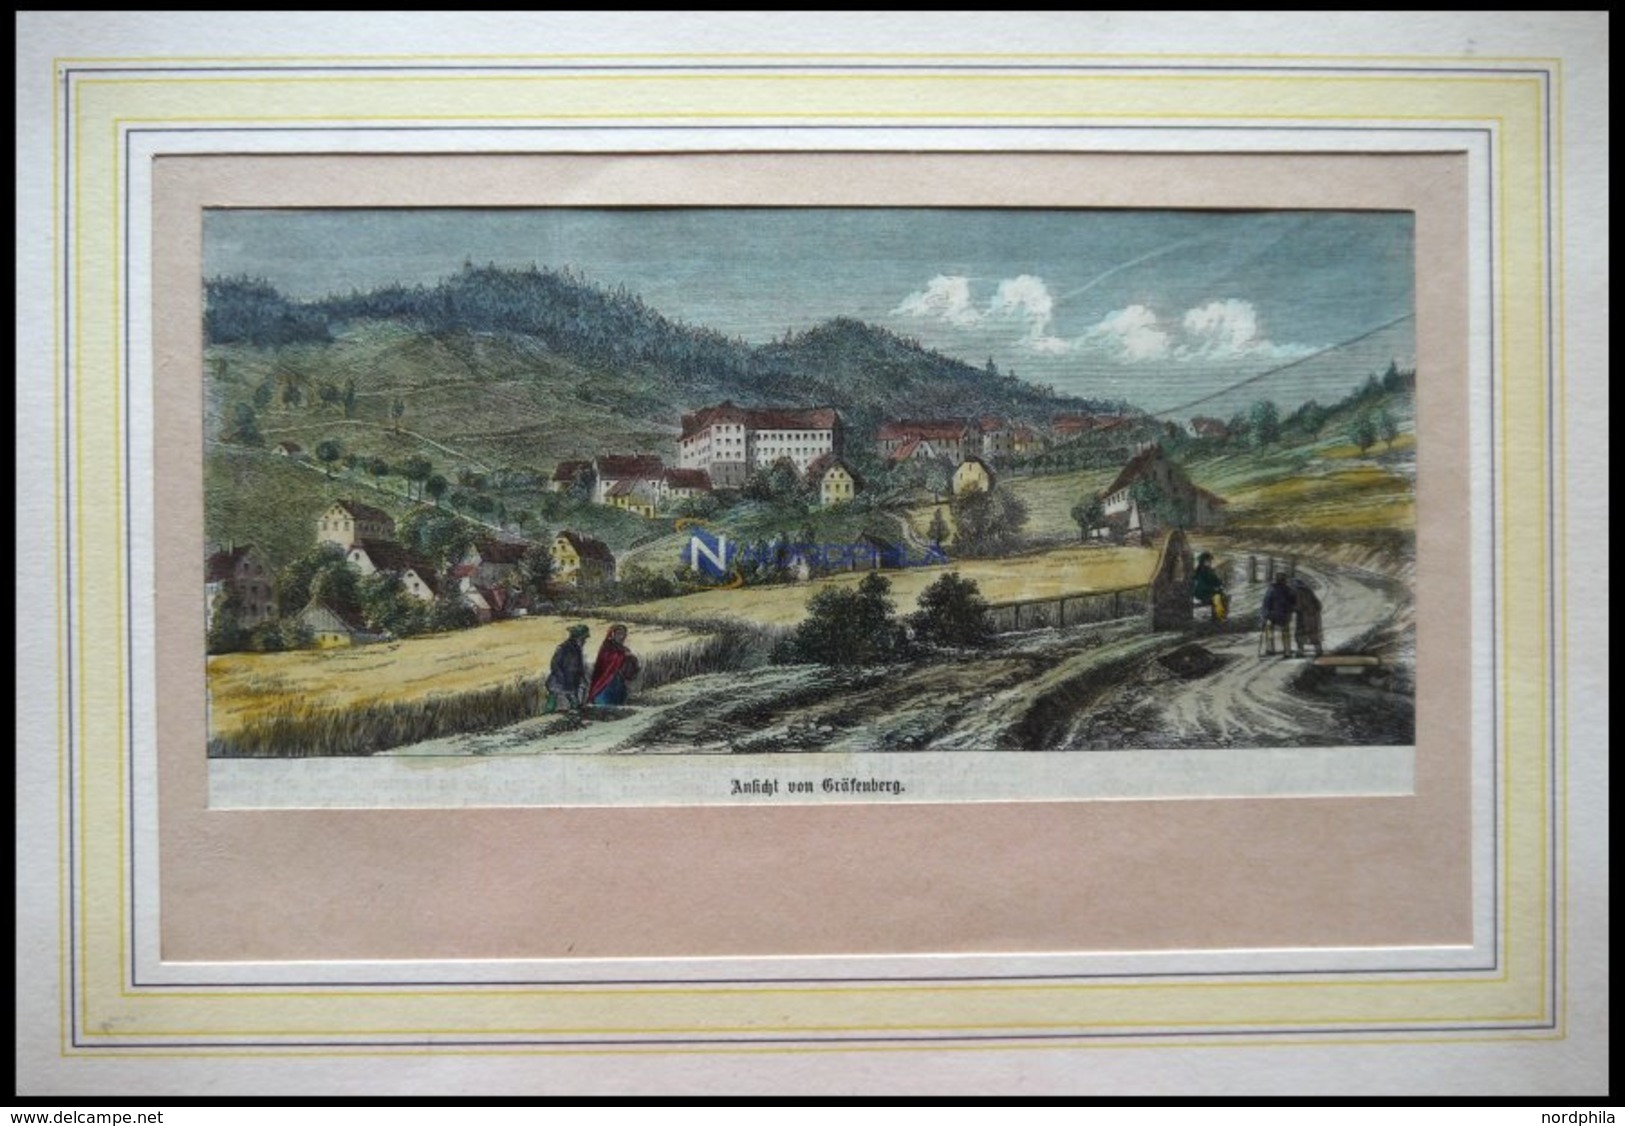 GRÄFENBERG I. SCHLESIEN, Gesamtansicht, Kolorierter Holzstich Um 1880 - Lithographies